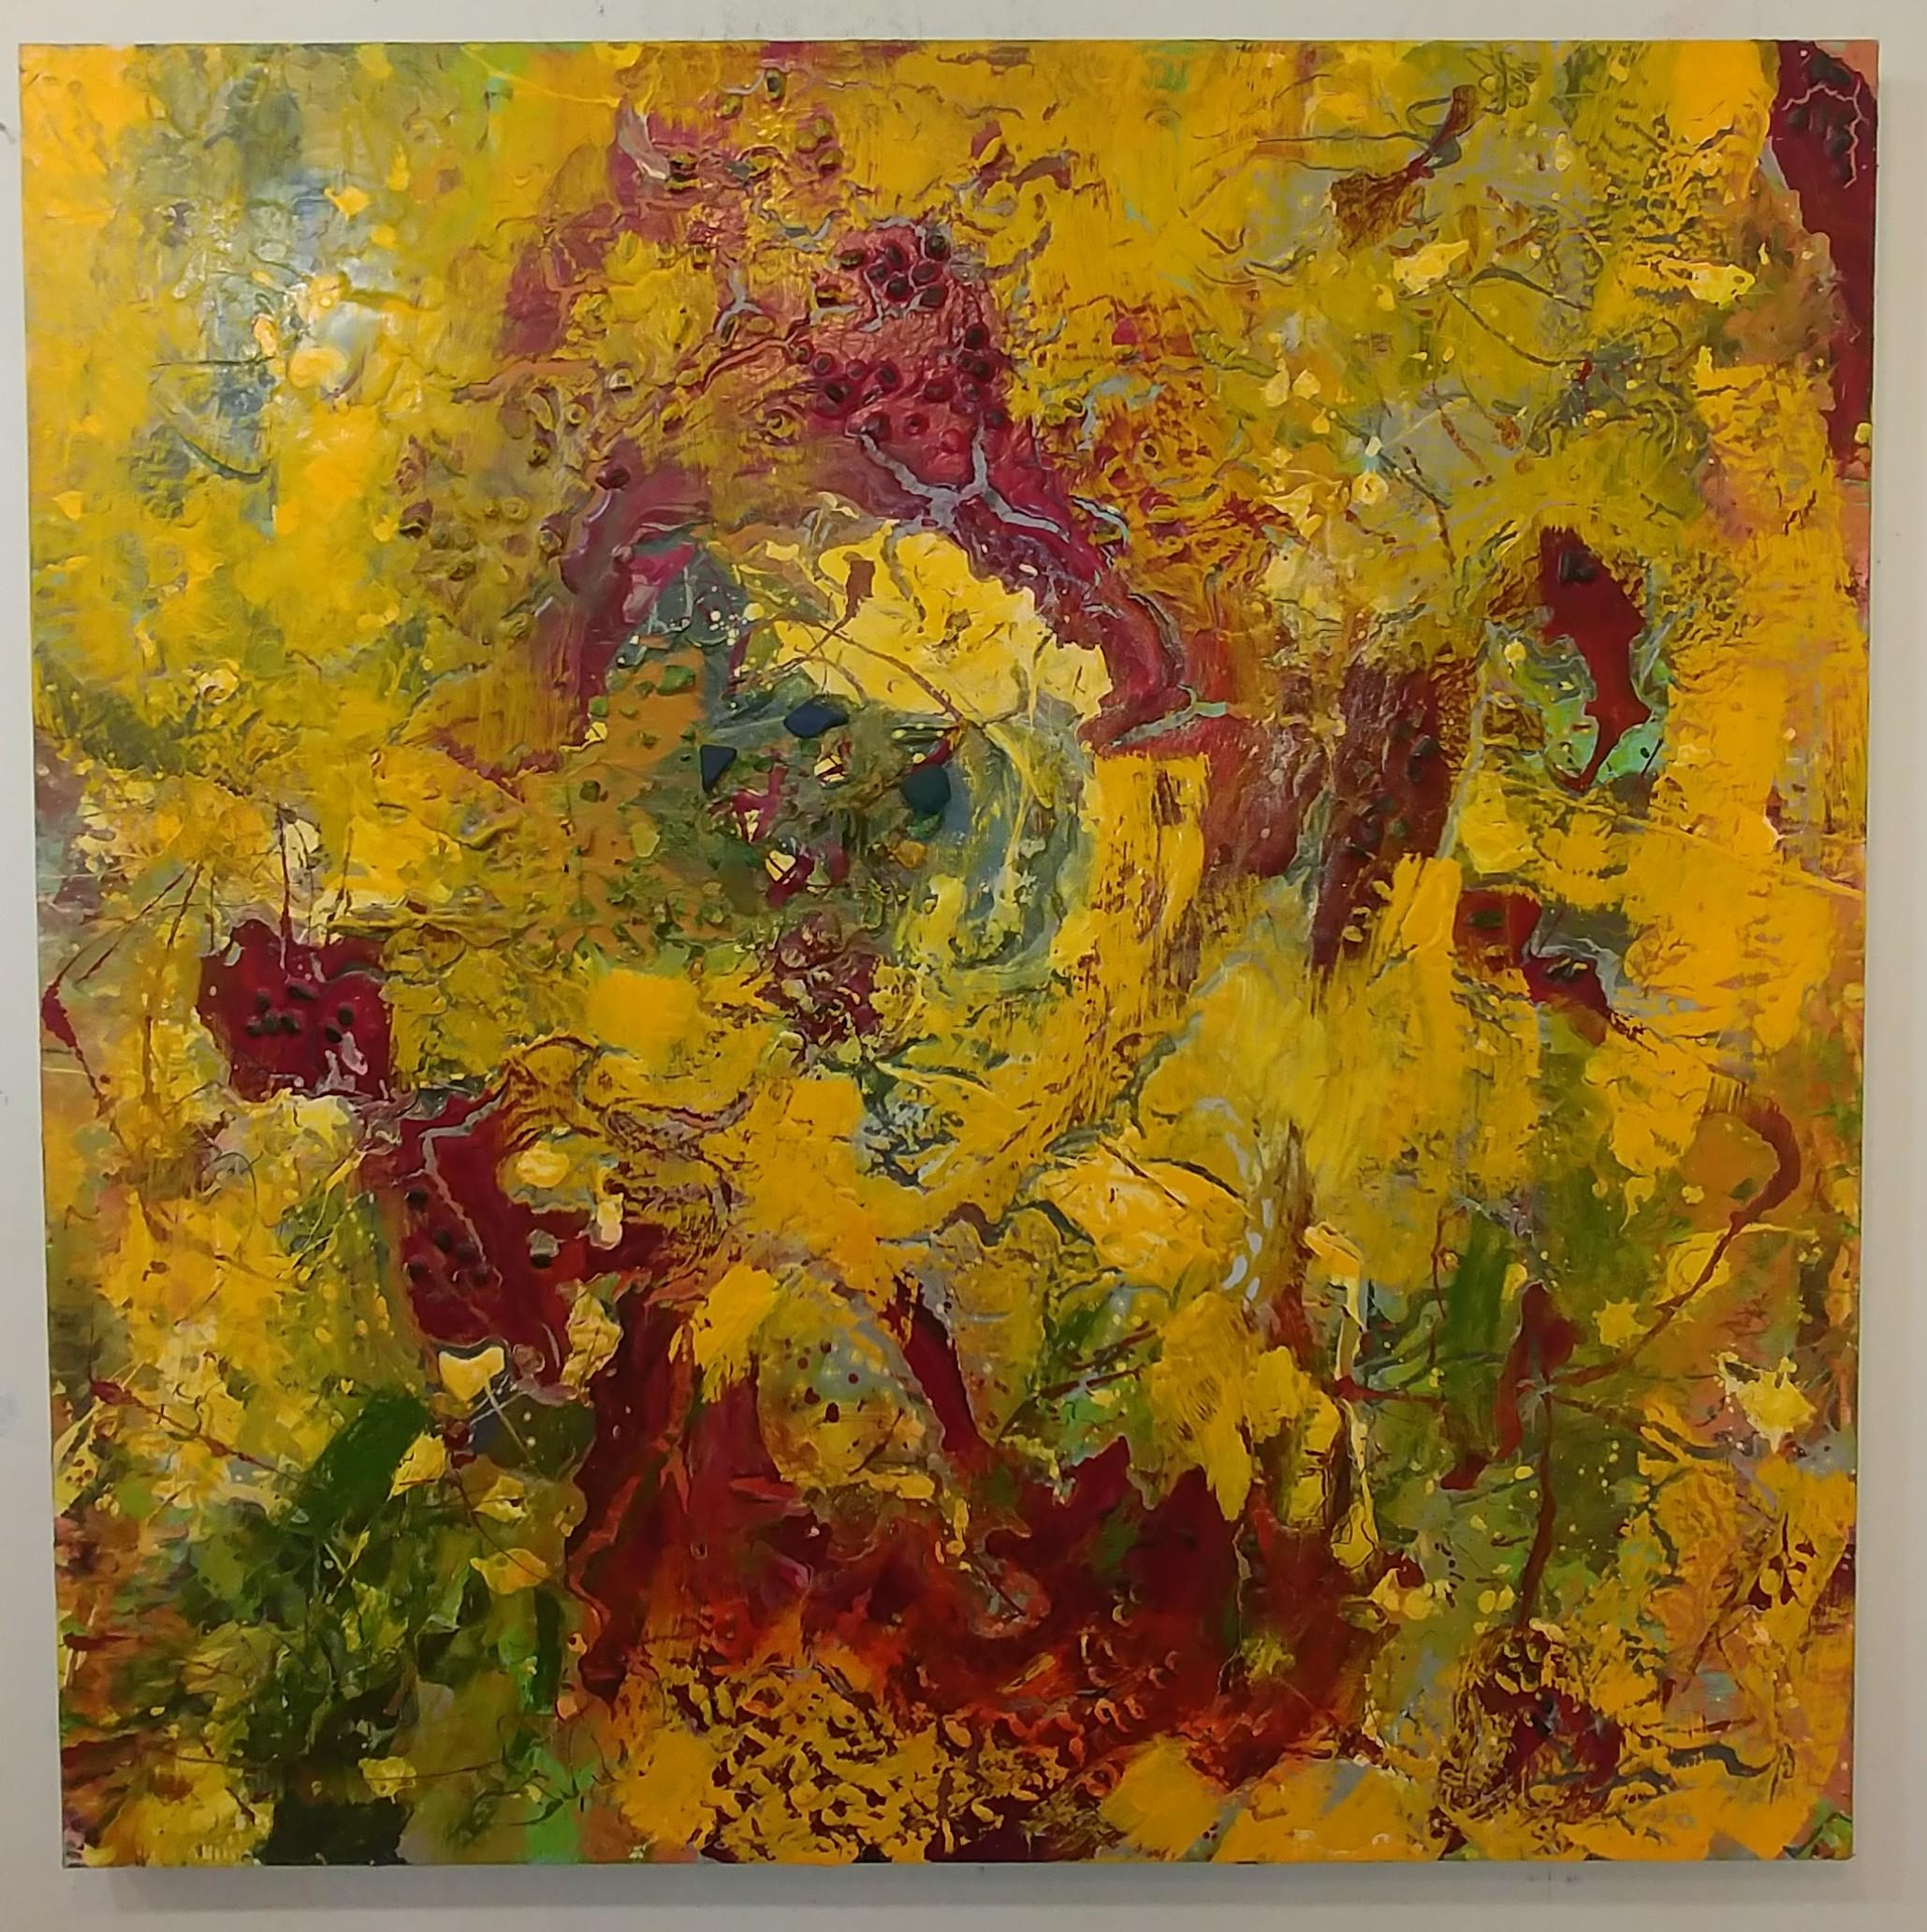 Abstract Painting Nancy Seibert - Neuf Awakening 48 X 48